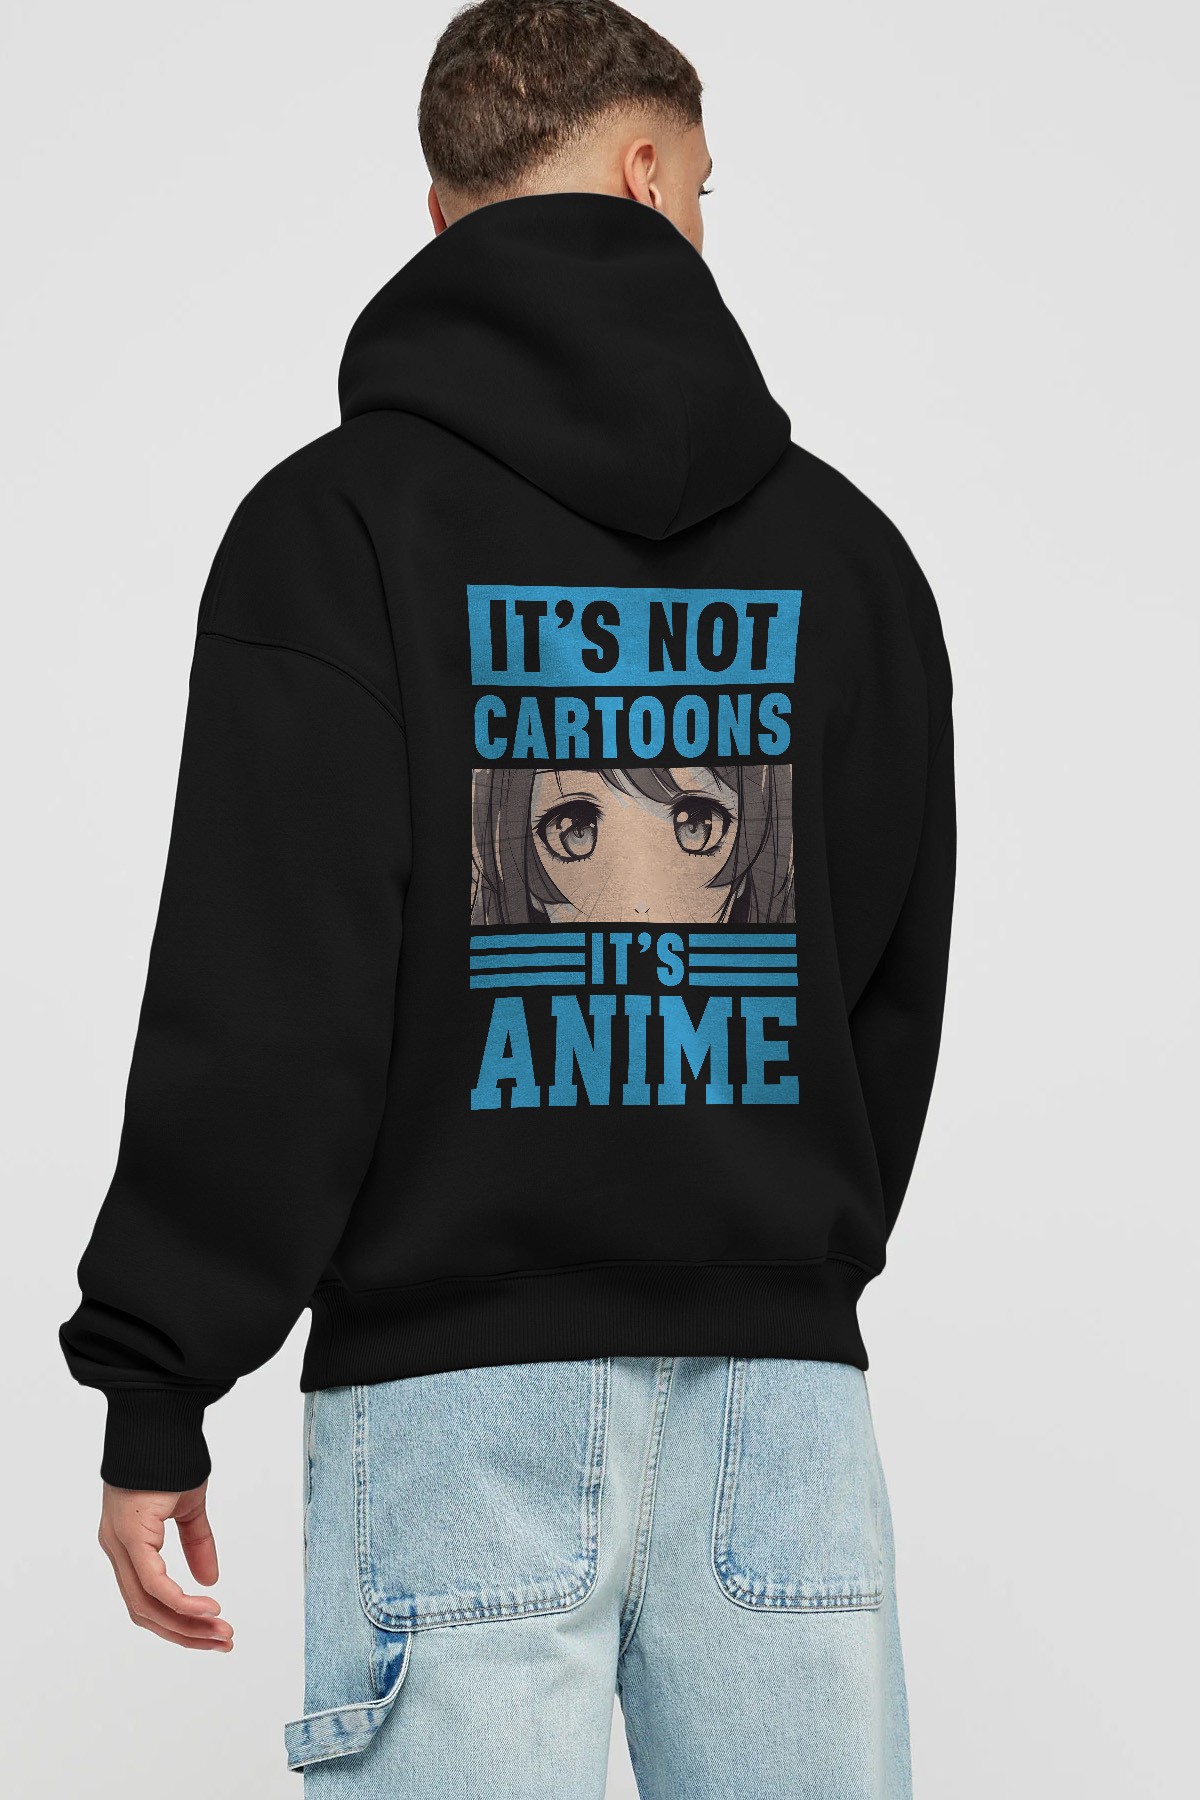 Its Anime Anime Arka Baskılı Hoodie Oversize Kapüşonlu Sweatshirt Erkek Kadın Unisex